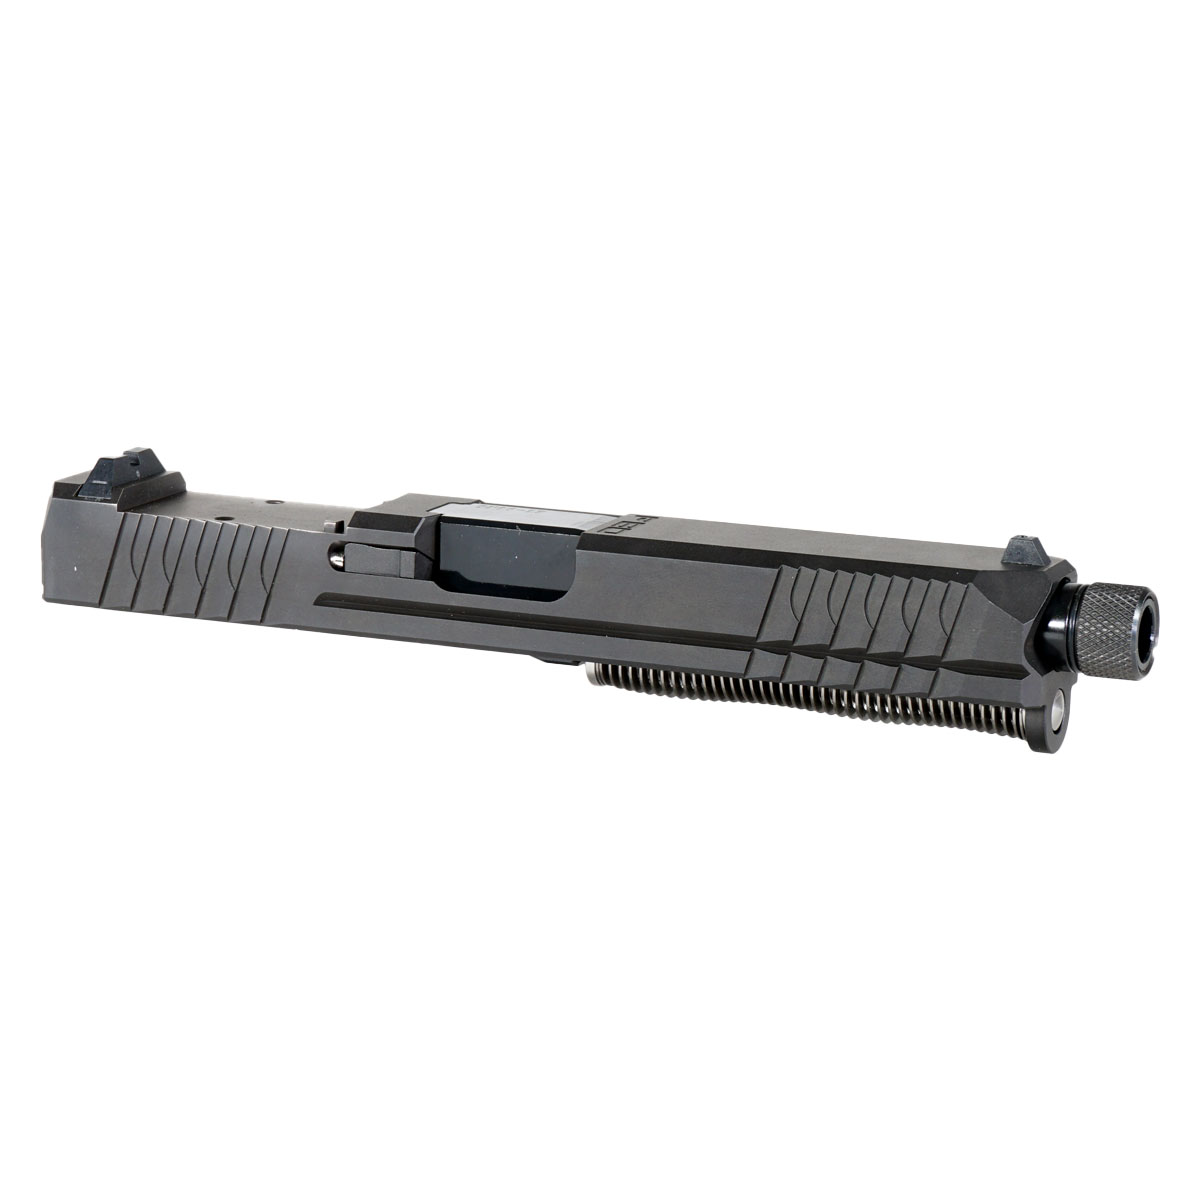 DDS 'Obsidian Blade' 9mm Complete Slide Kit - Glock 17 Gen 1-3 Compatible